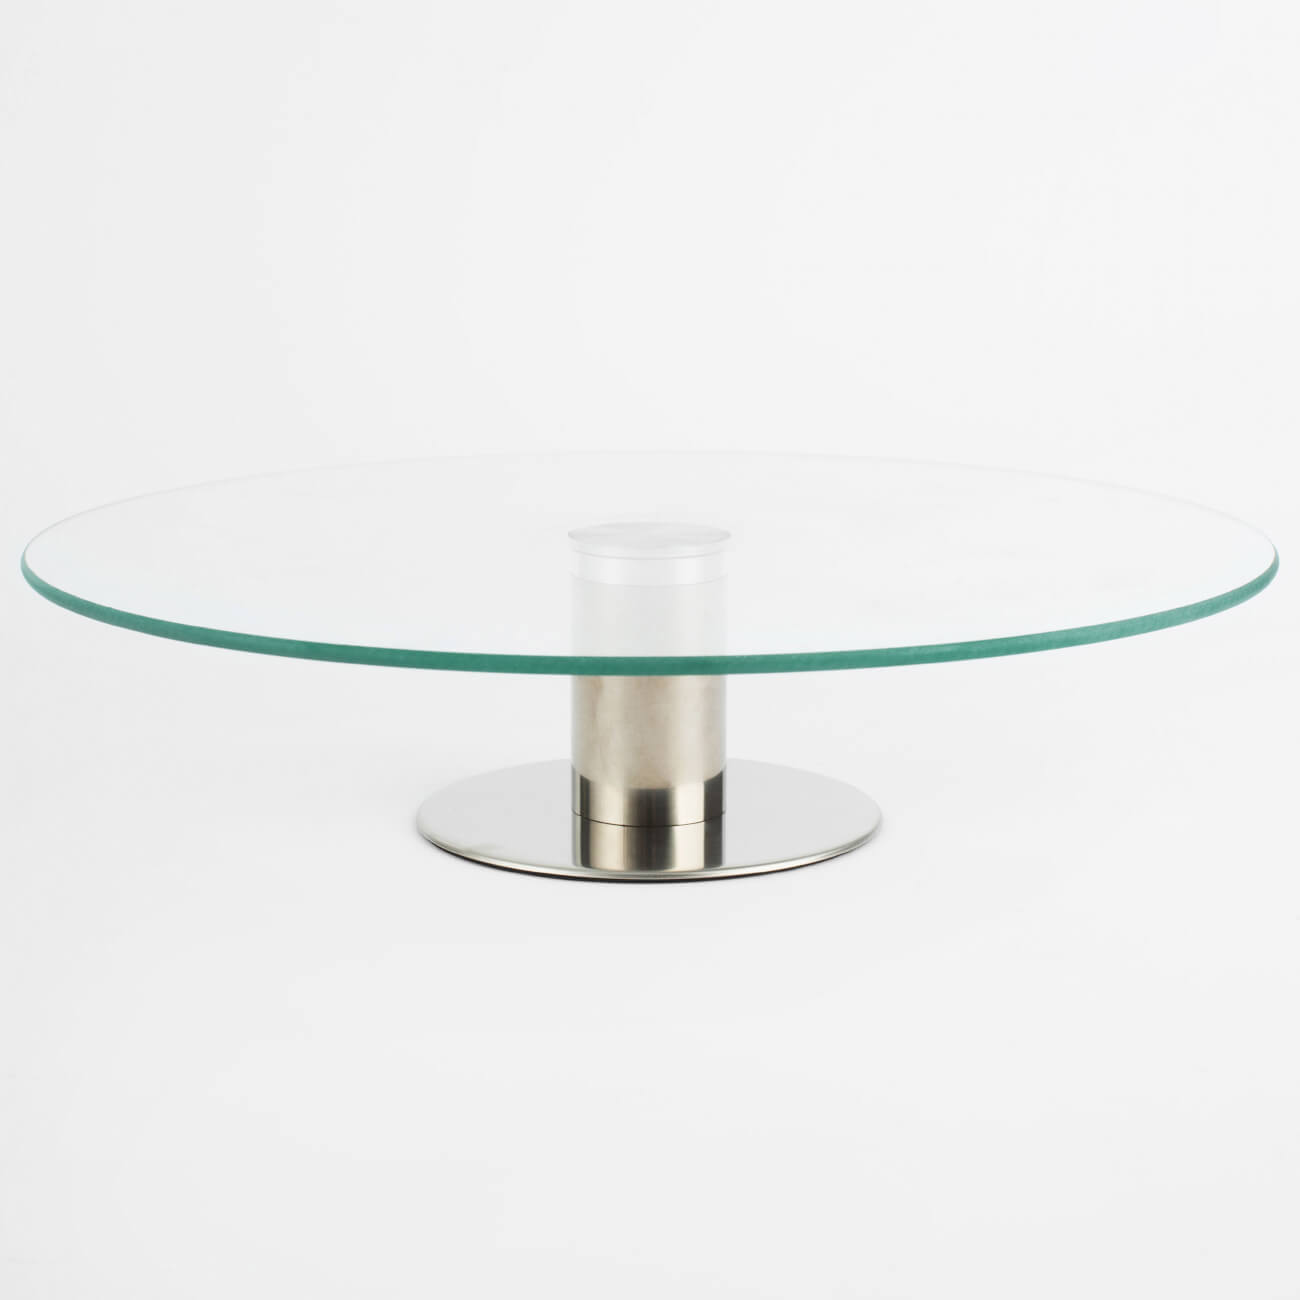 Dish on a leg, 30x7 cm, glass / steel, Classic изображение № 1